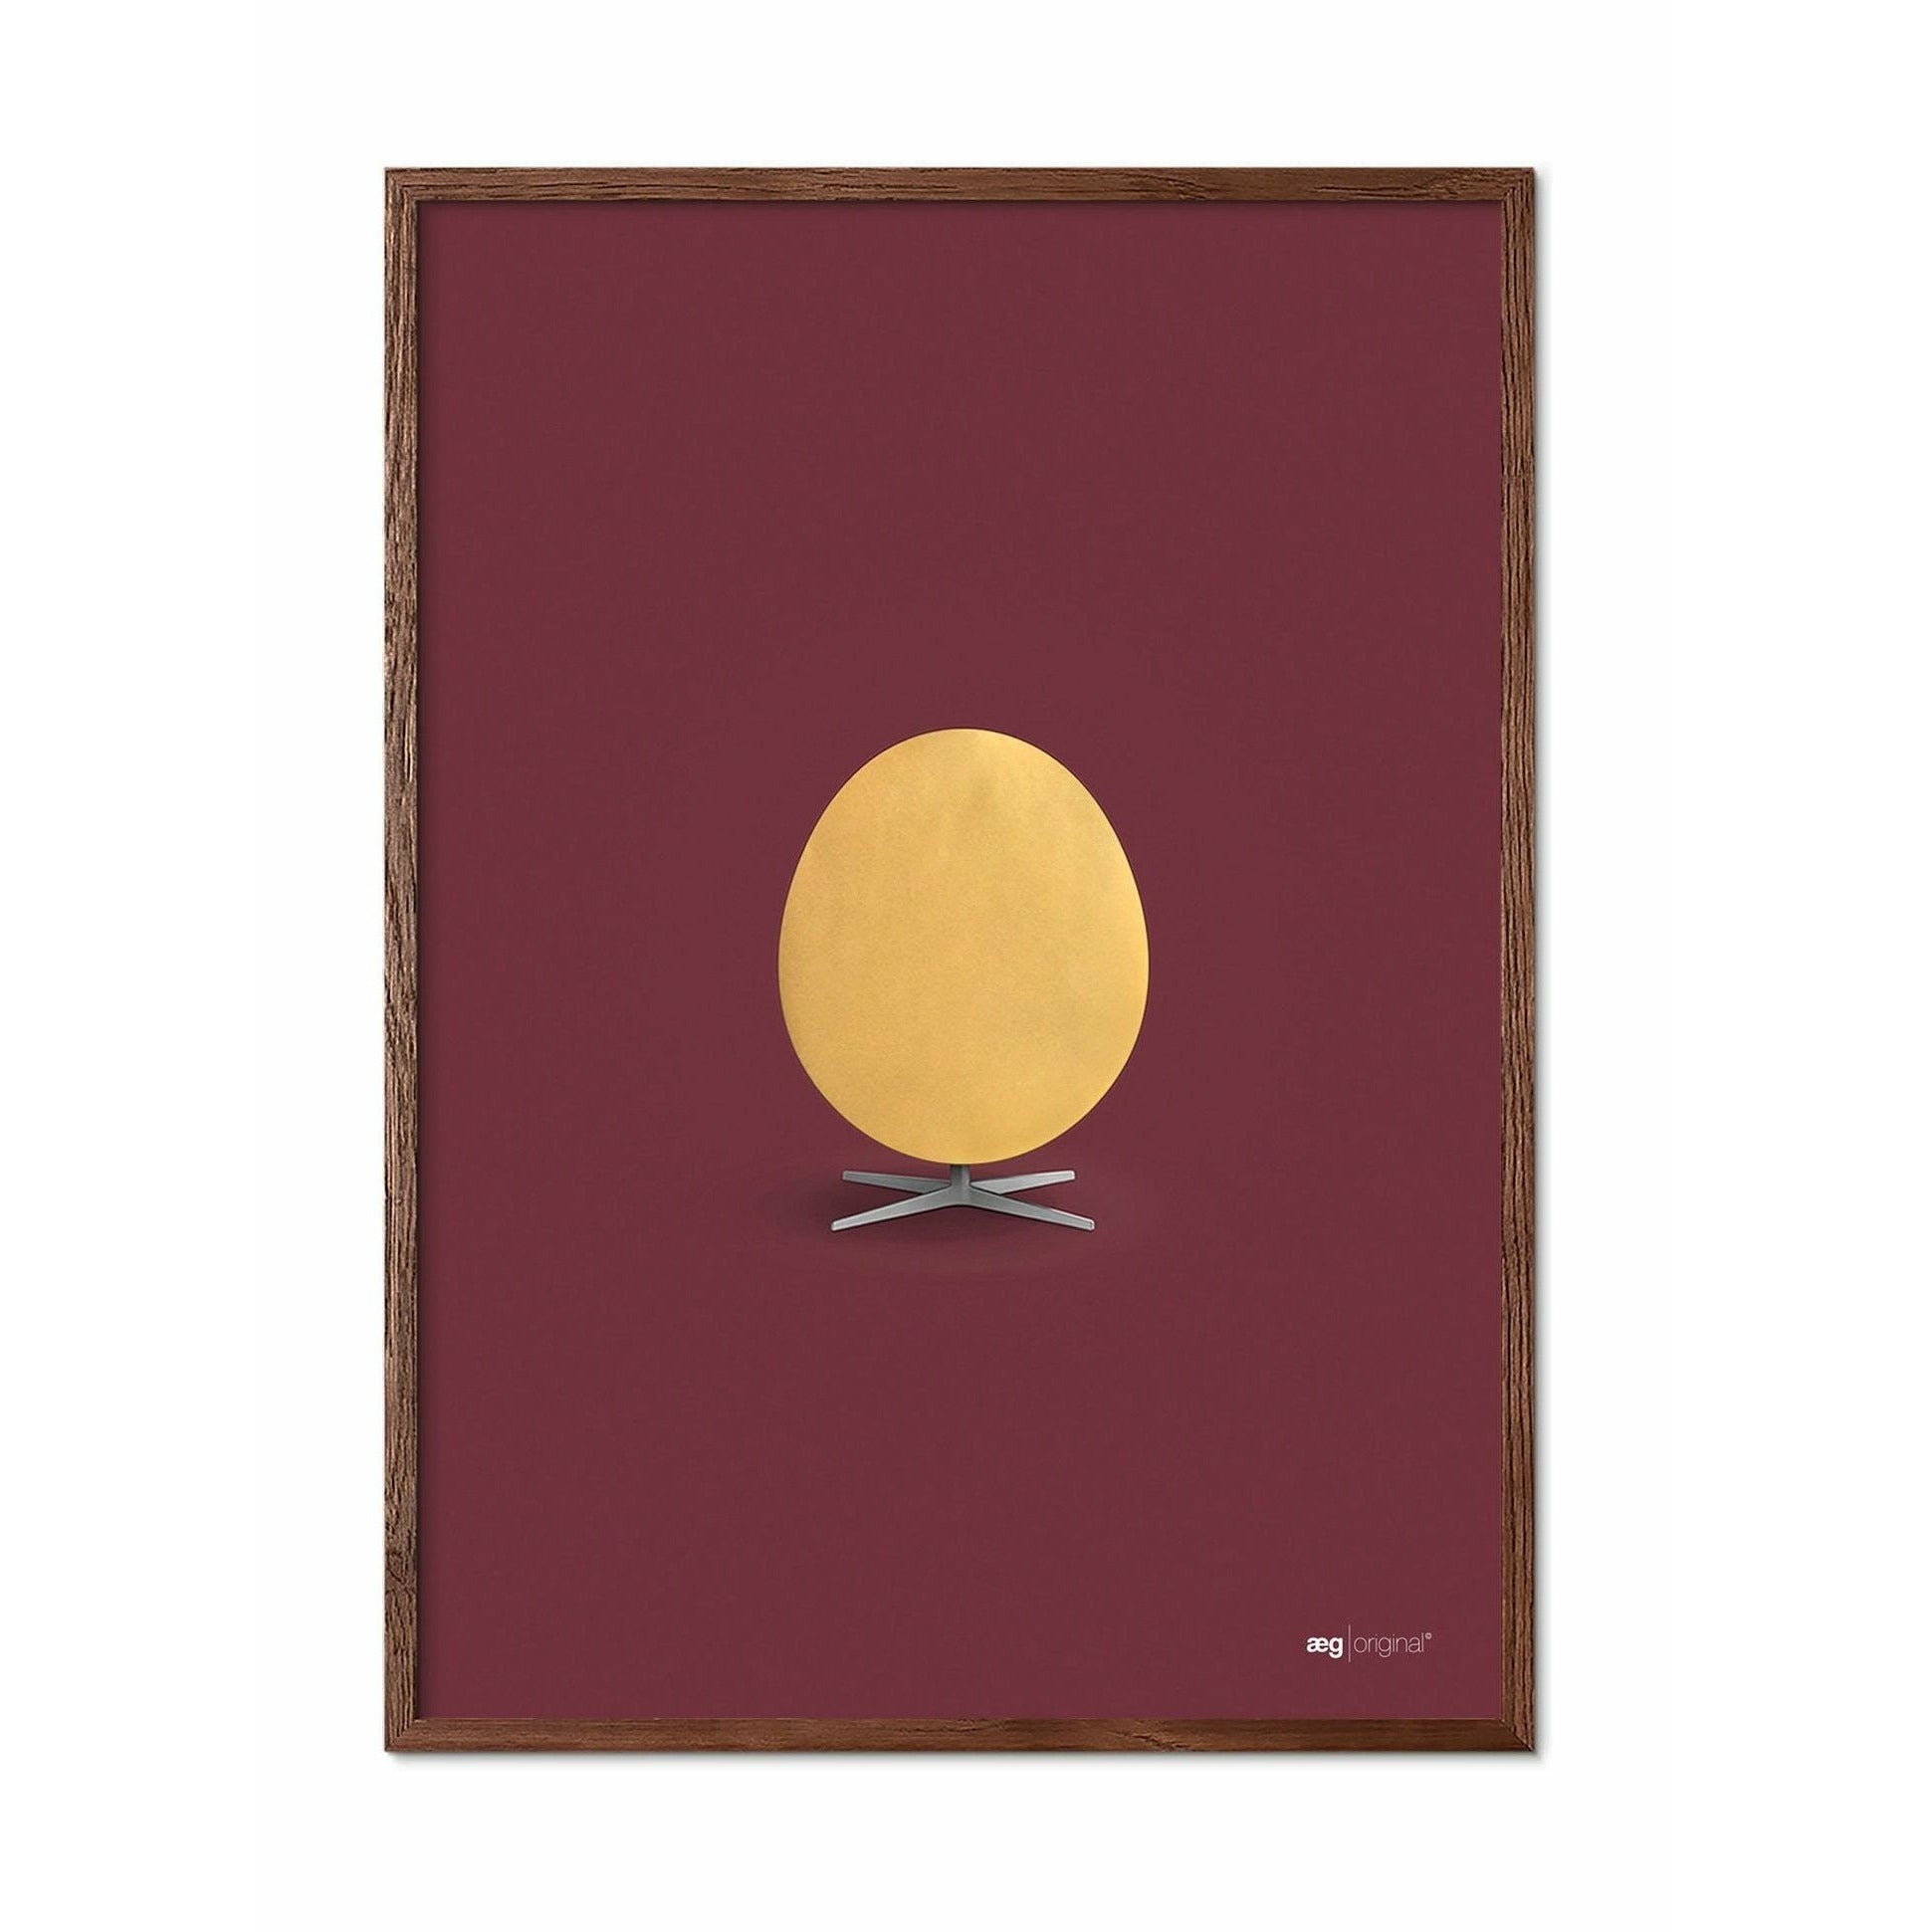 Brainchild Egg Poster, Frame Made Of Dark Wood 50x70 Cm, Gold/Bordeaux Background